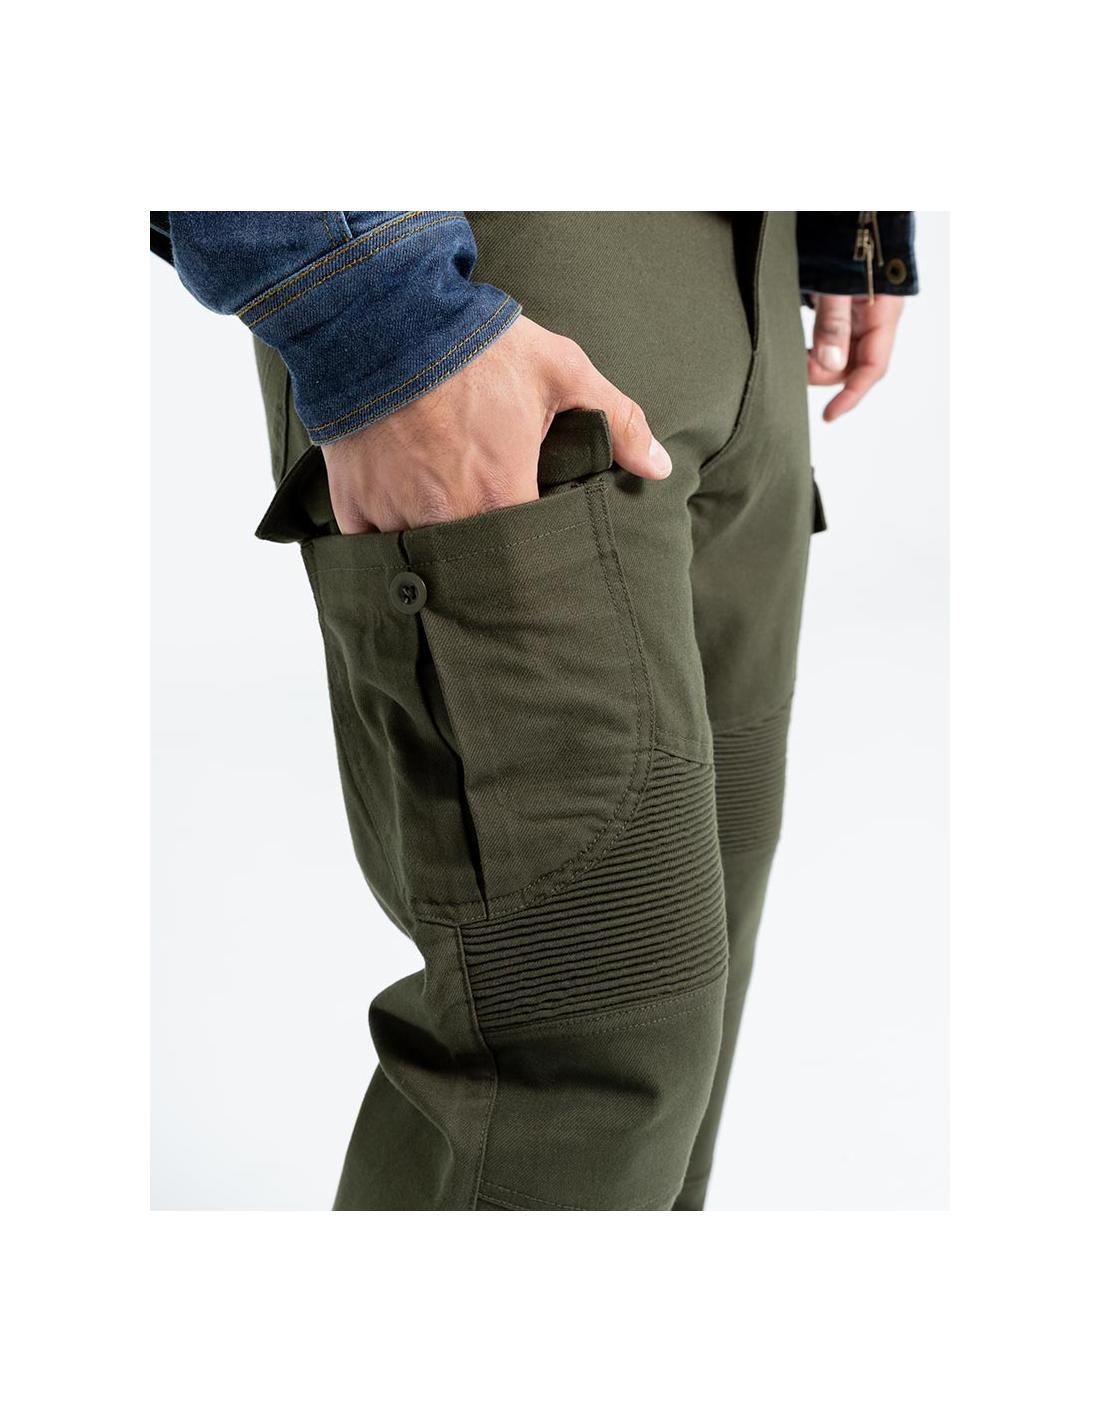 Pantalones para exteriores Husky Krony M S22-pantalones de senderismo  funcionales-verde oscuro